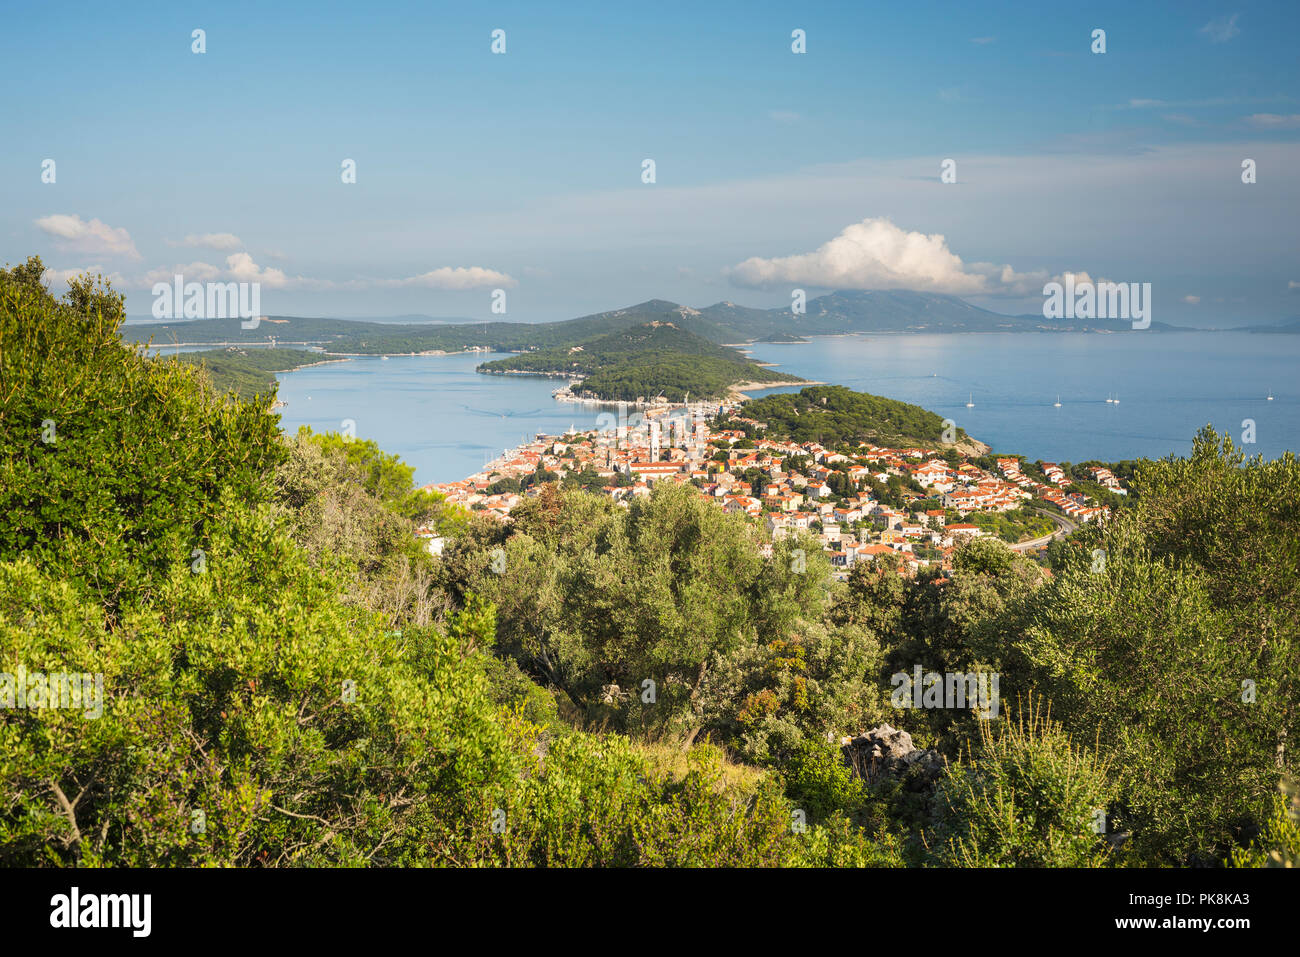 Le port et le centre-ville de Mali Lošinj et l'île de Lošinj avec l'Osoršćica, Lošinj, la baie de Kvarner, Croatie Banque D'Images